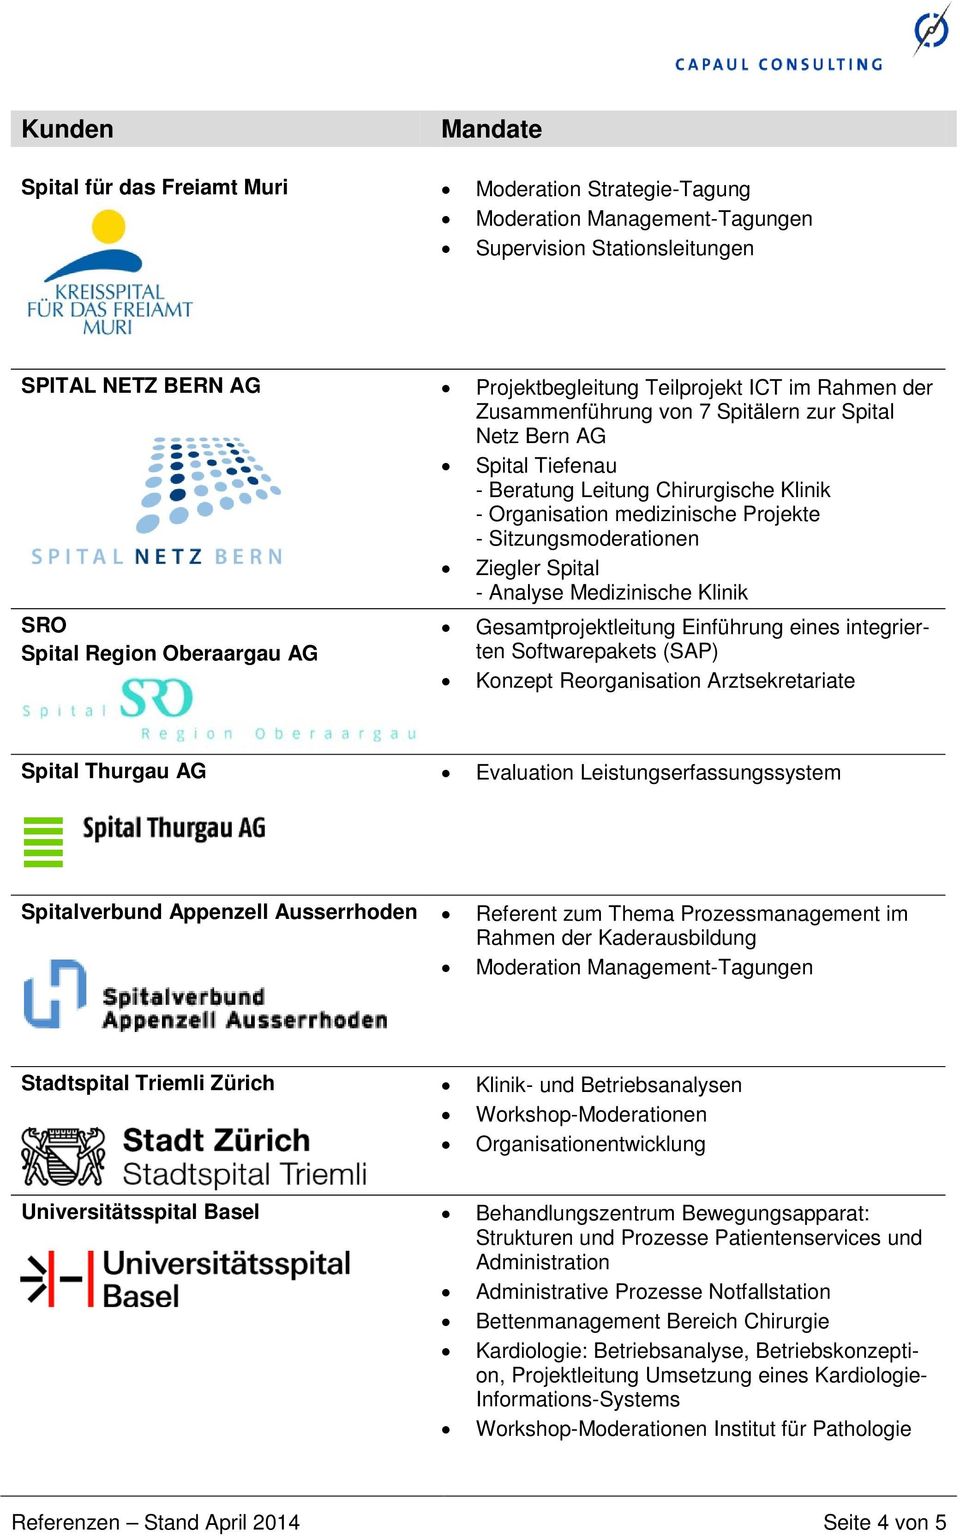 Medizinische Klinik SRO Spital Region Oberaargau AG Gesamtprojektleitung Einführung eines integrierten Softwarepakets (SAP) Konzept Reorganisation Arztsekretariate Spital Thurgau AG Evaluation